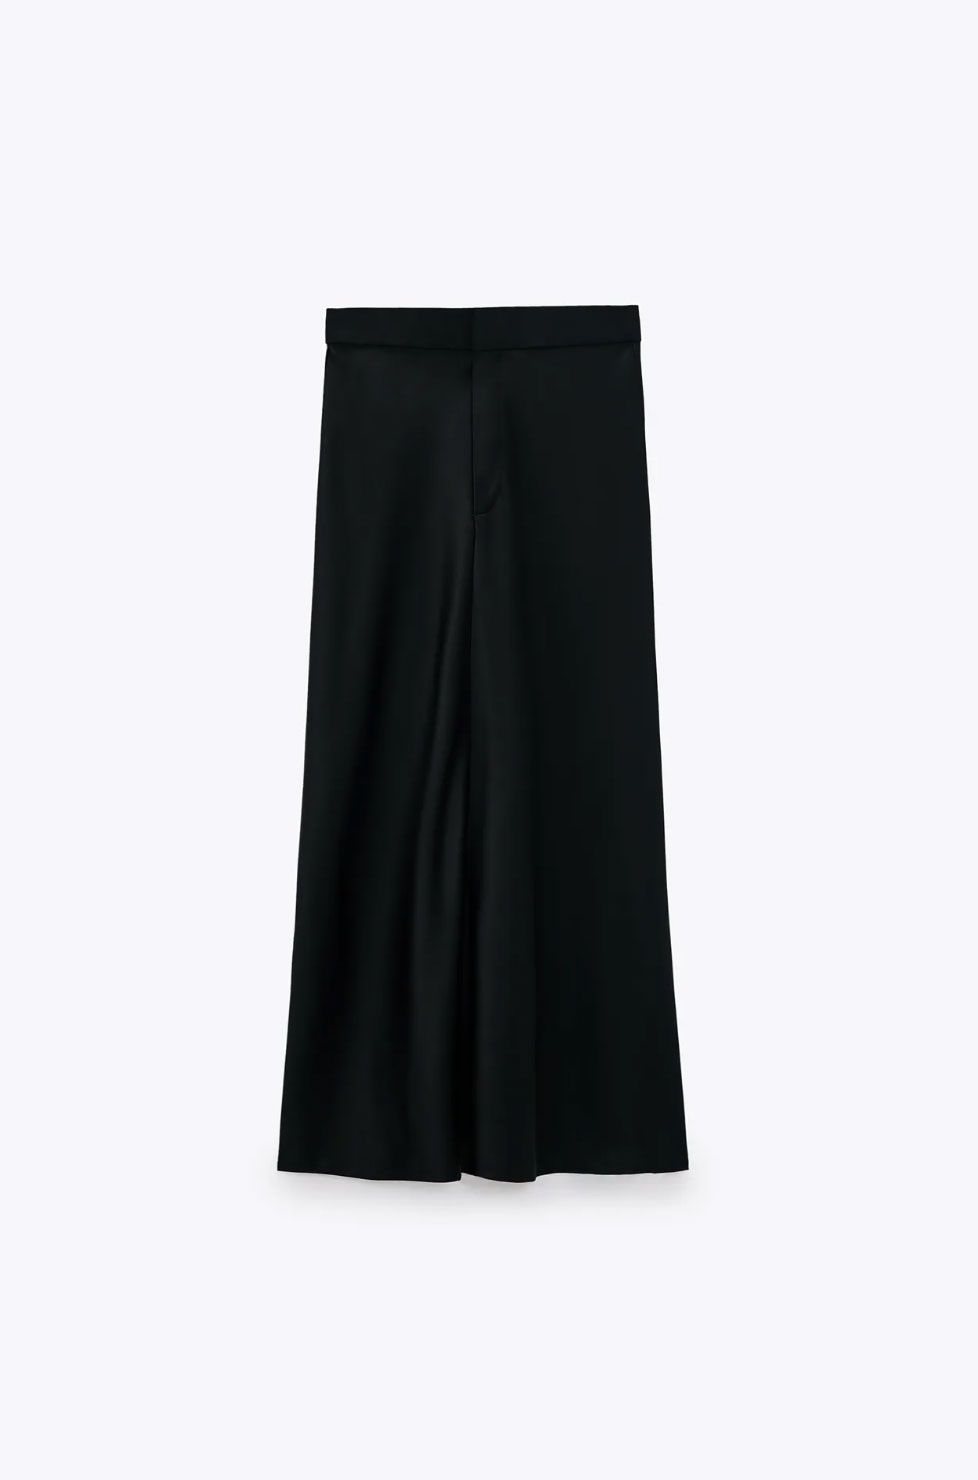 Las 3 faldas midi de Zara que serán tendencia verano